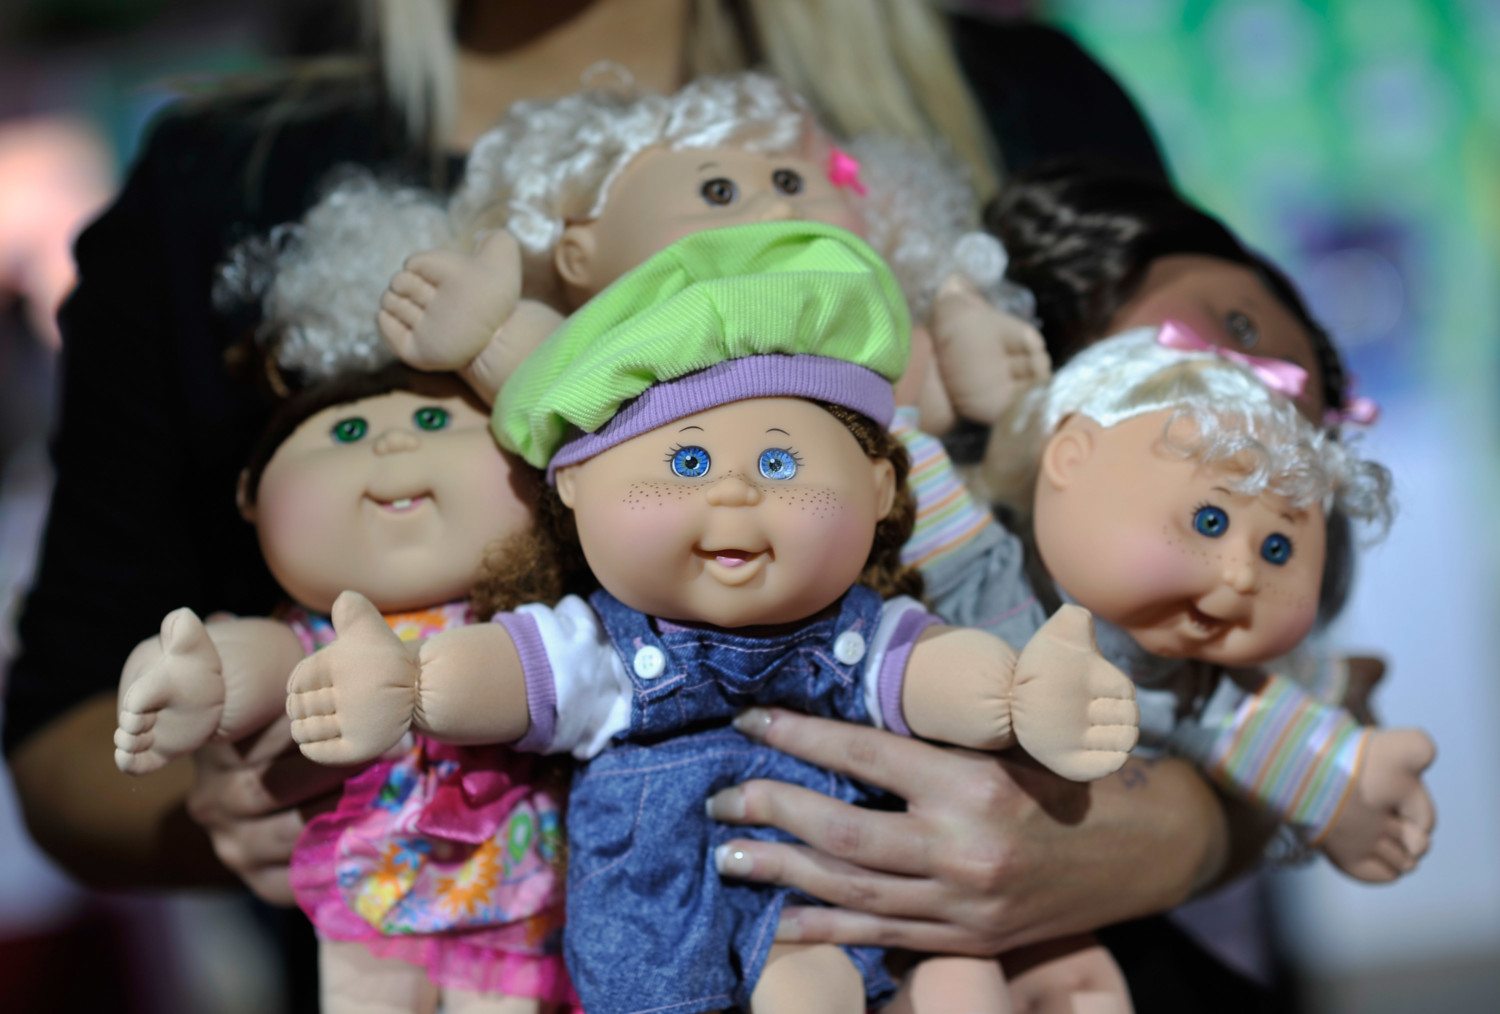 1980s baby dolls